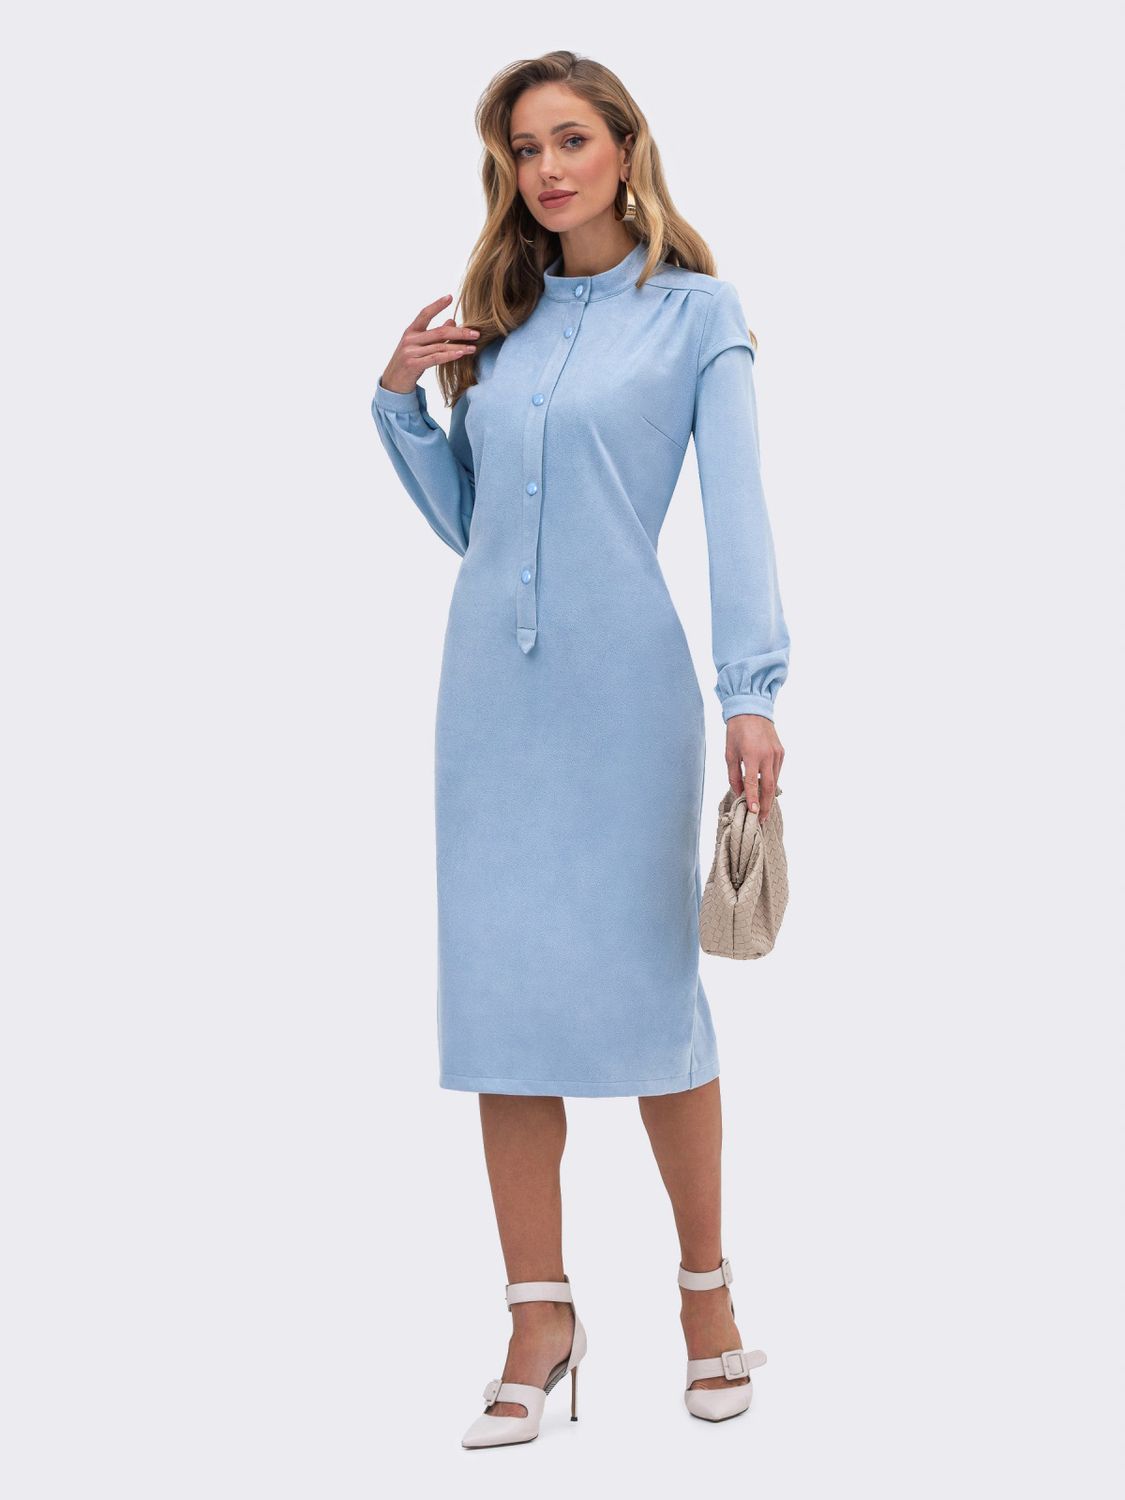 Замшевое платье рубашка в офисном стиле голубое - фото